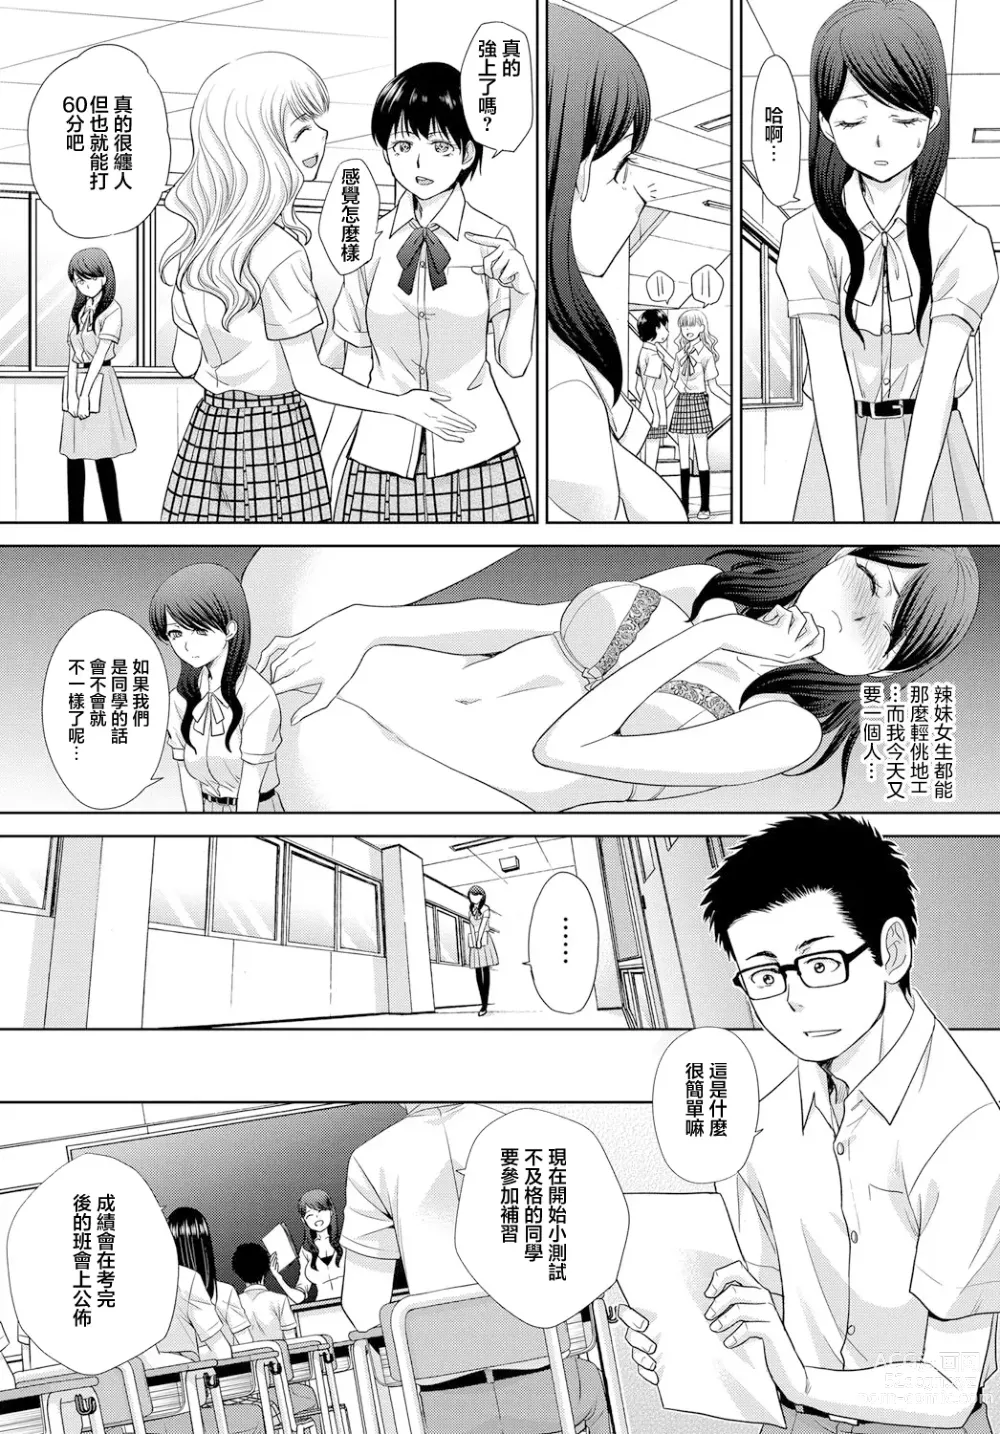 Page 2 of manga Daisuki JK Sensei